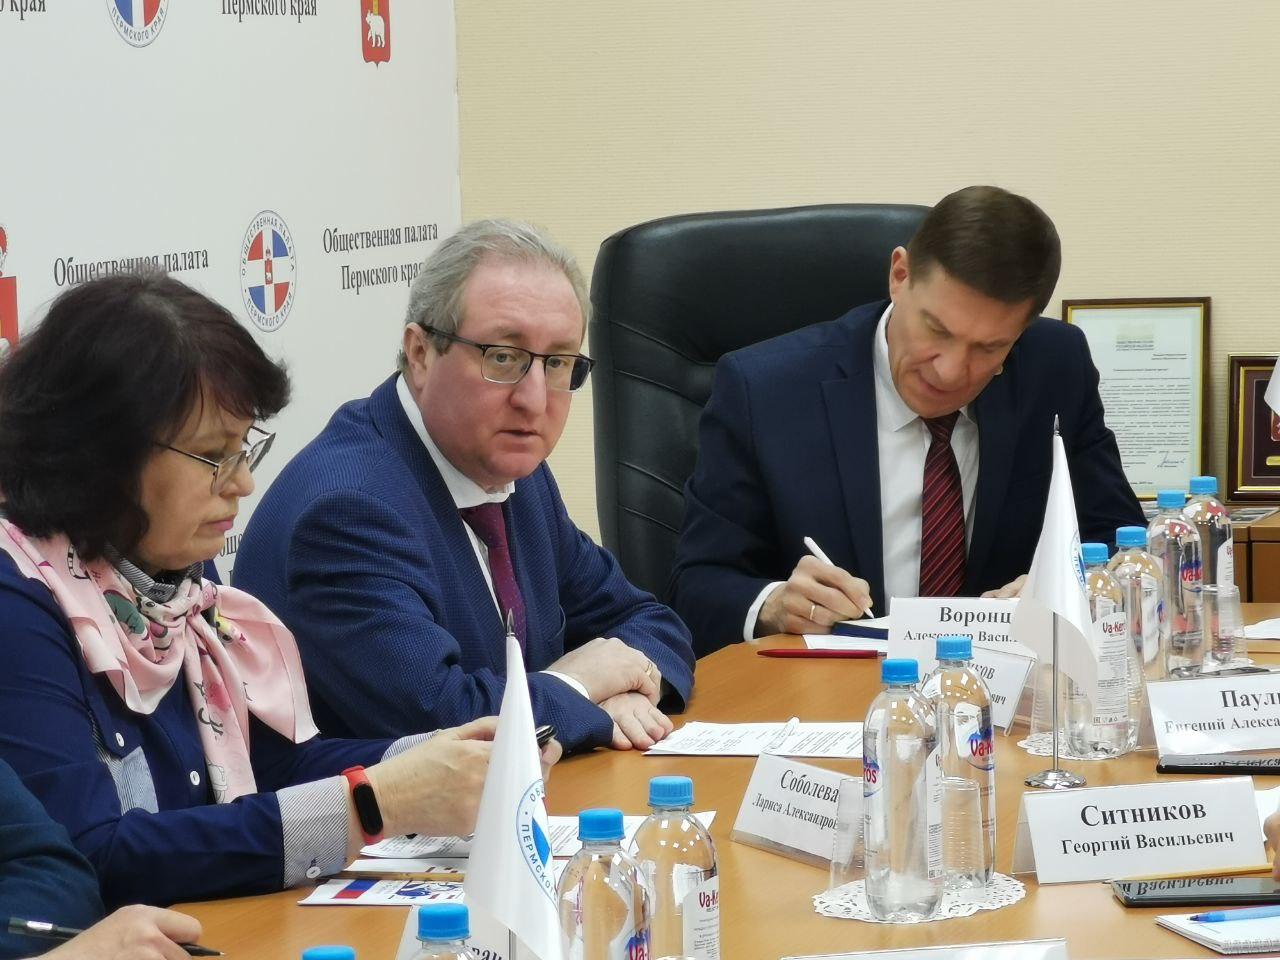 В Прикамье состоялся обучающий семинар для кандидатов в новый состав общественной наблюдательной комиссии Пермского края.